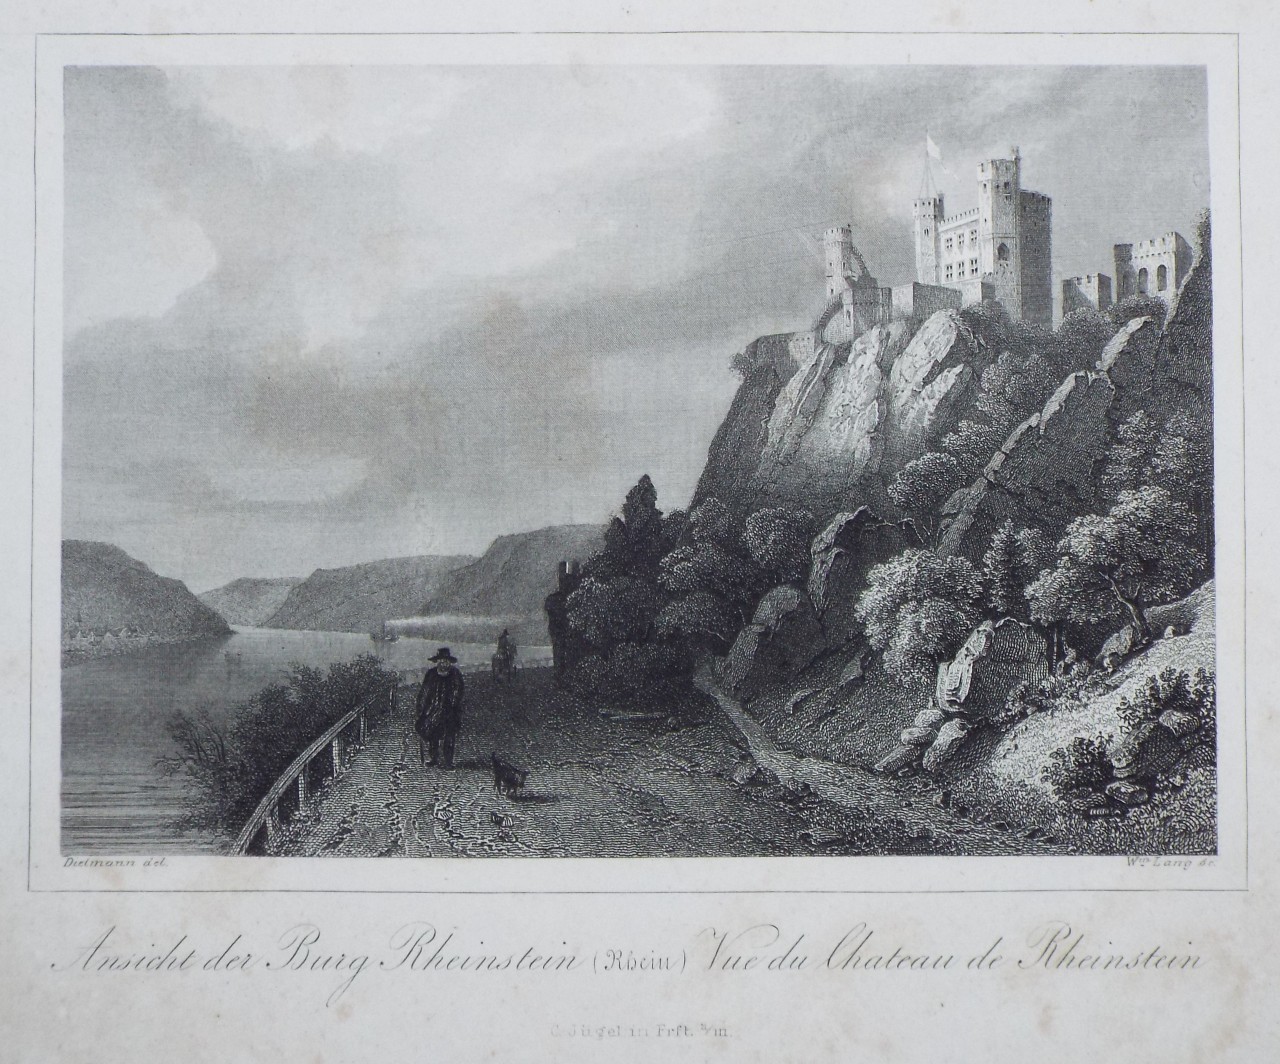 Print - Ansicht der Burg Rheinstein (Rhein) Vue du Chateau de Rheinstein - Lang